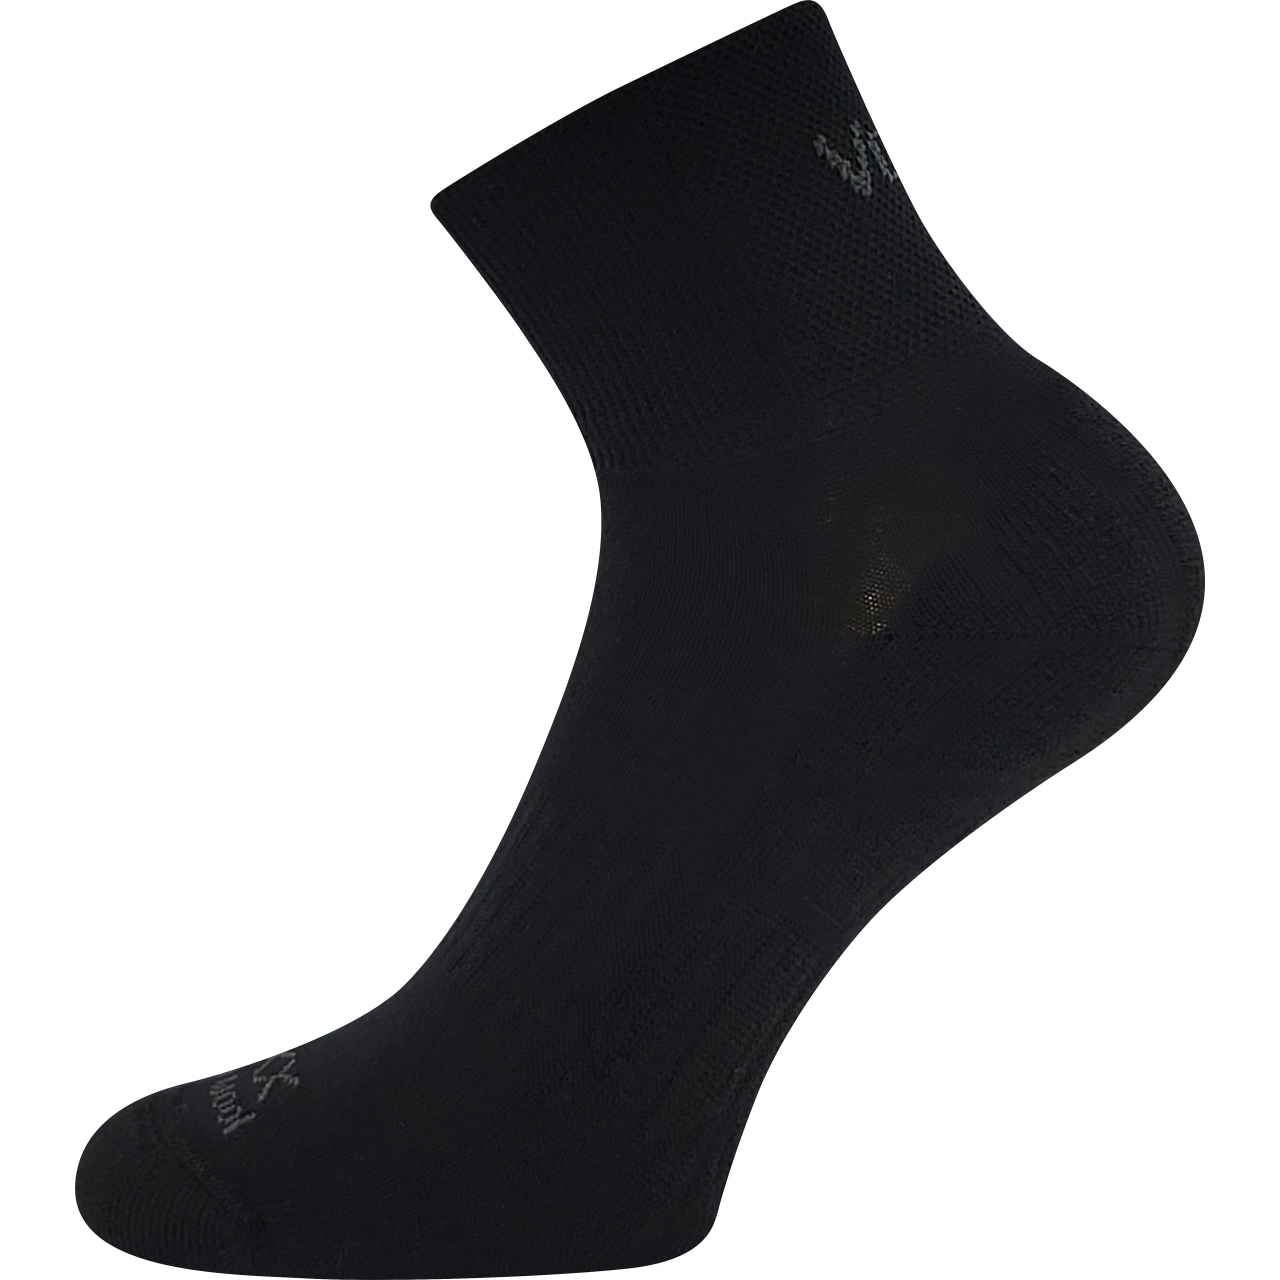 Ponožky unisex sportovní Voxx Twarix short - černé, 39-42